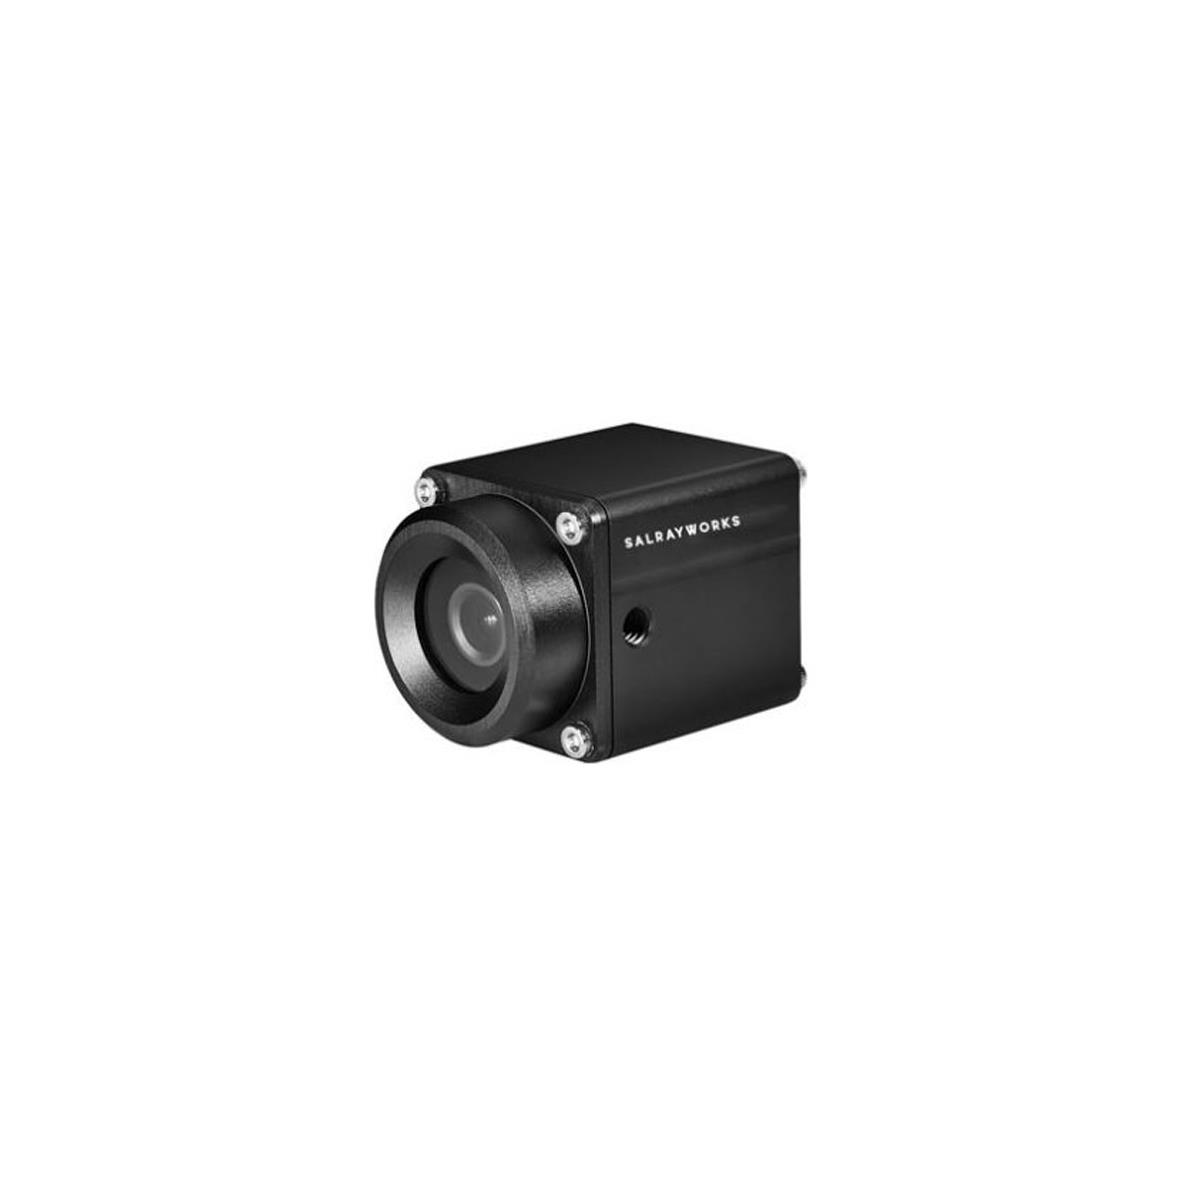 Image of Salrayworks V-WFS 1080p 1/2.8'' Exmor R CMOS POV Camera